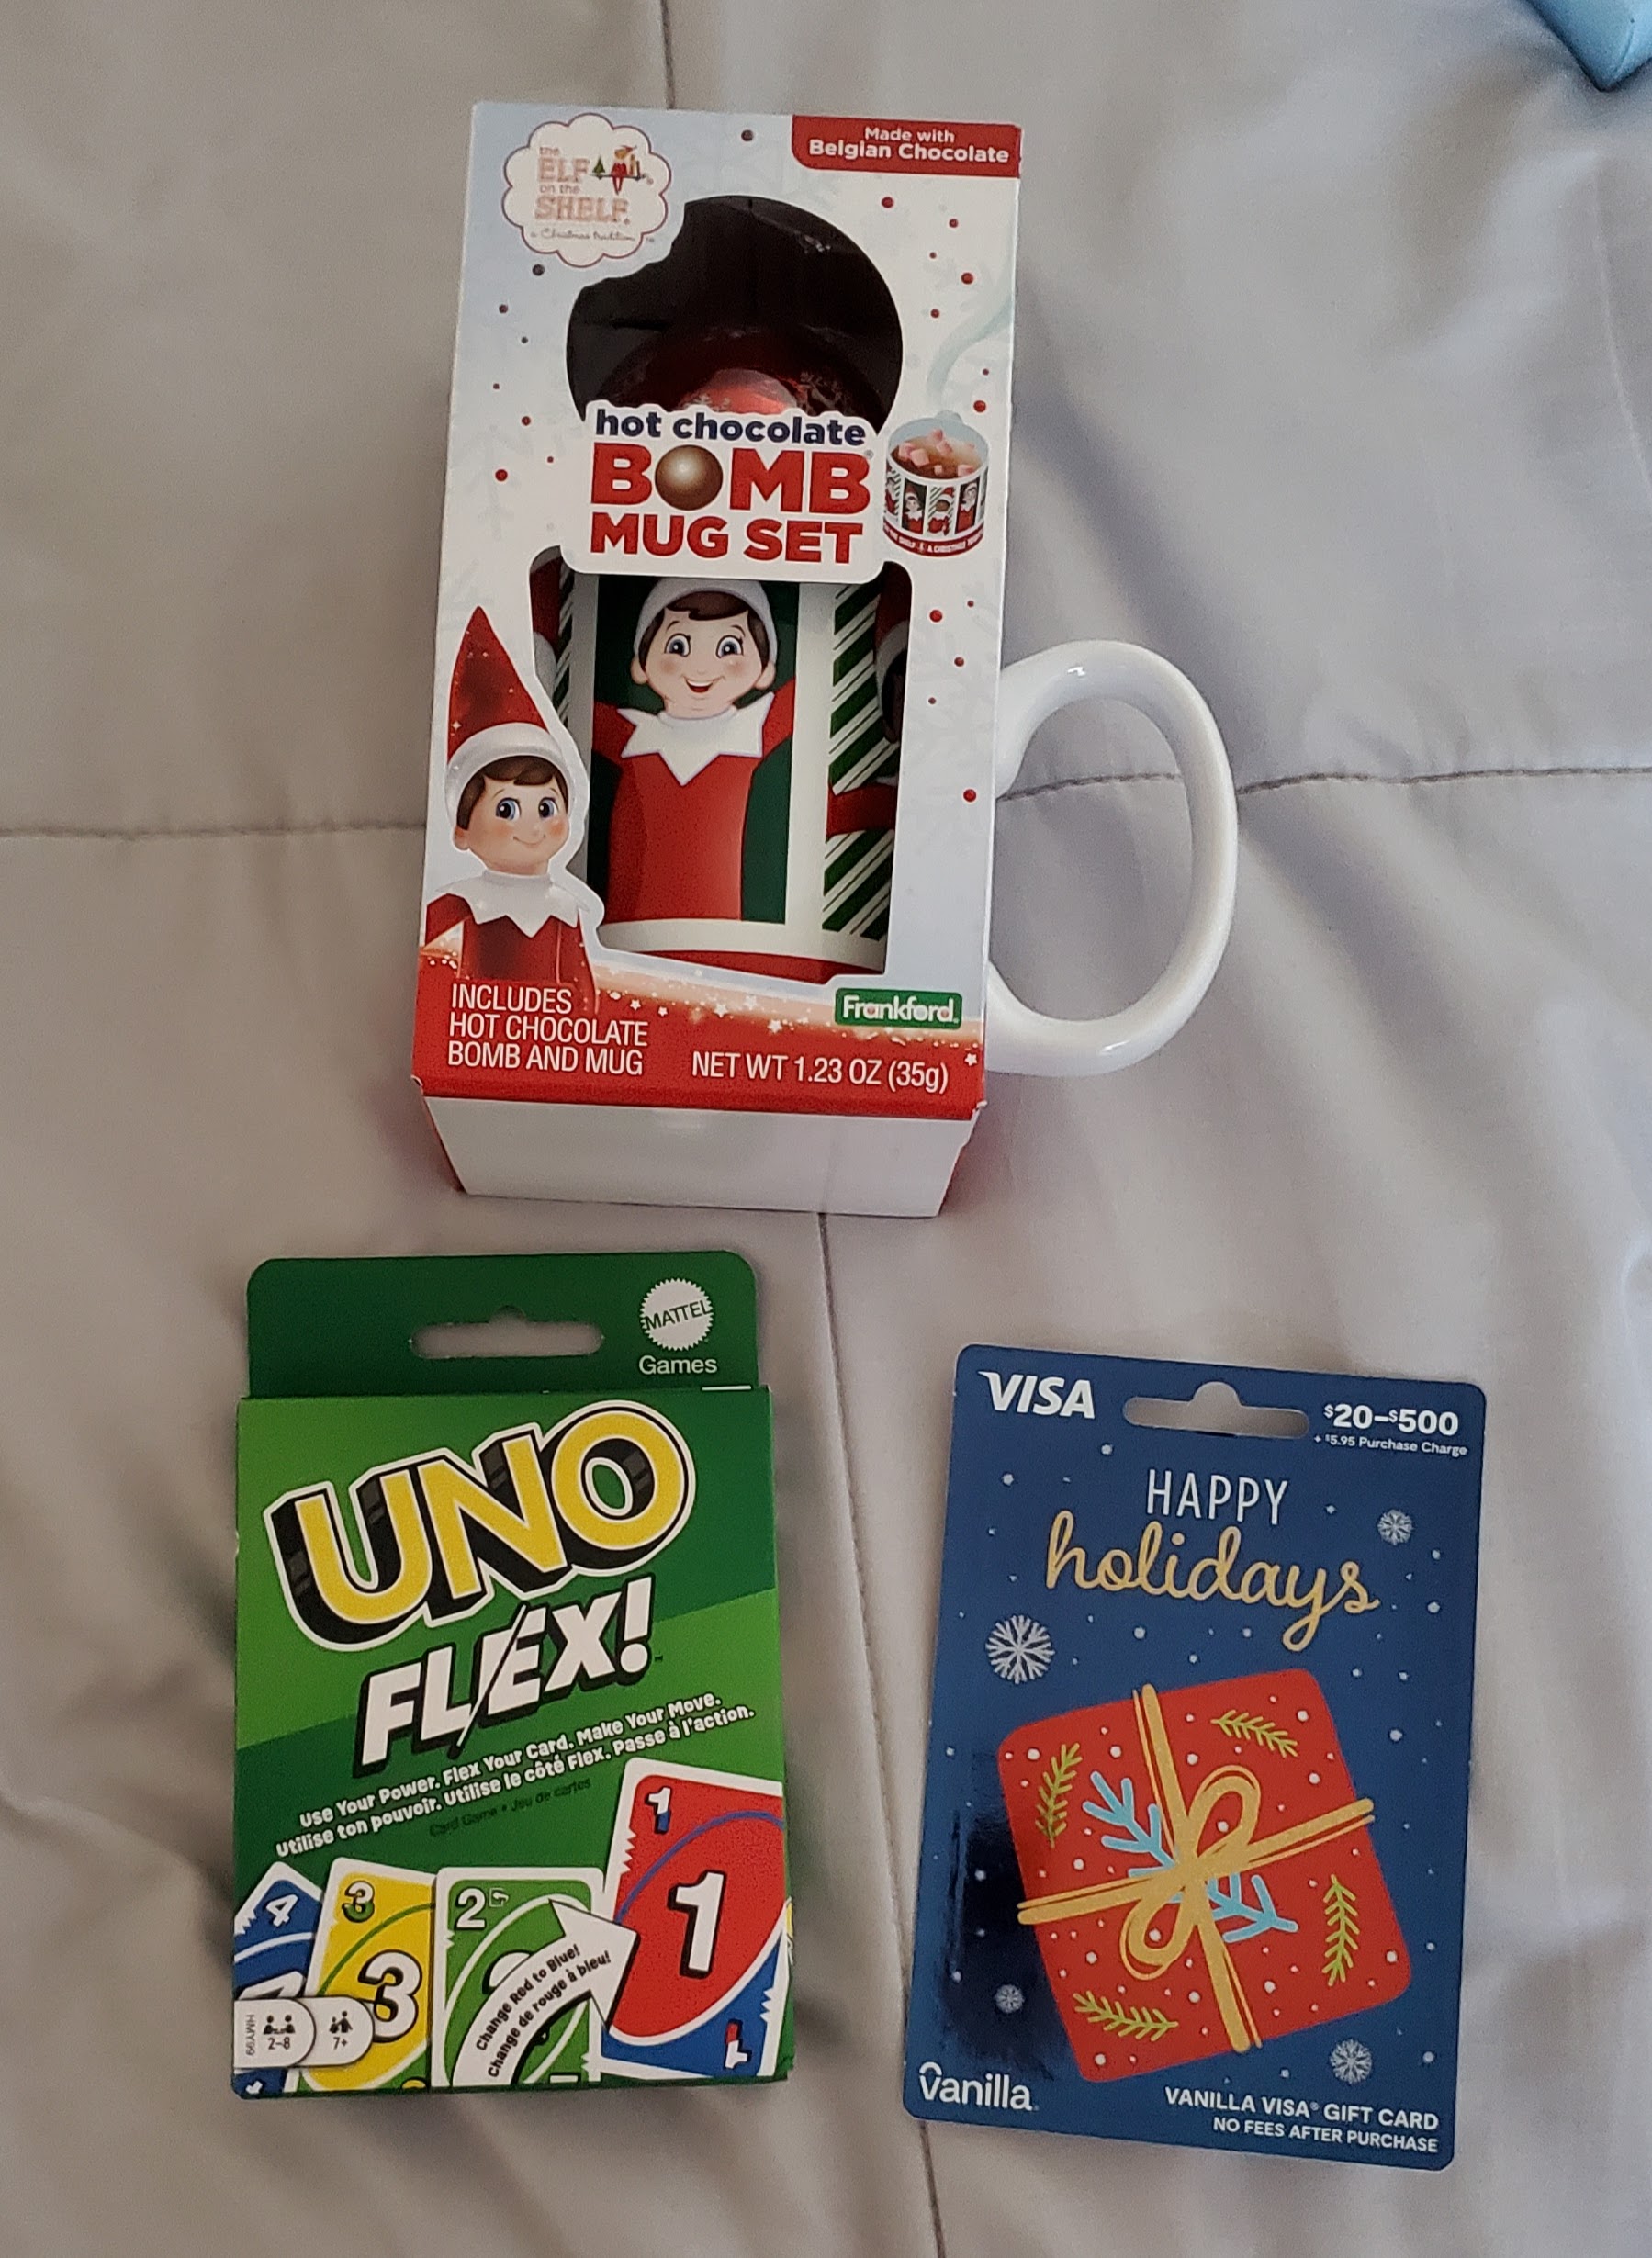 Uno, mug, and gift card